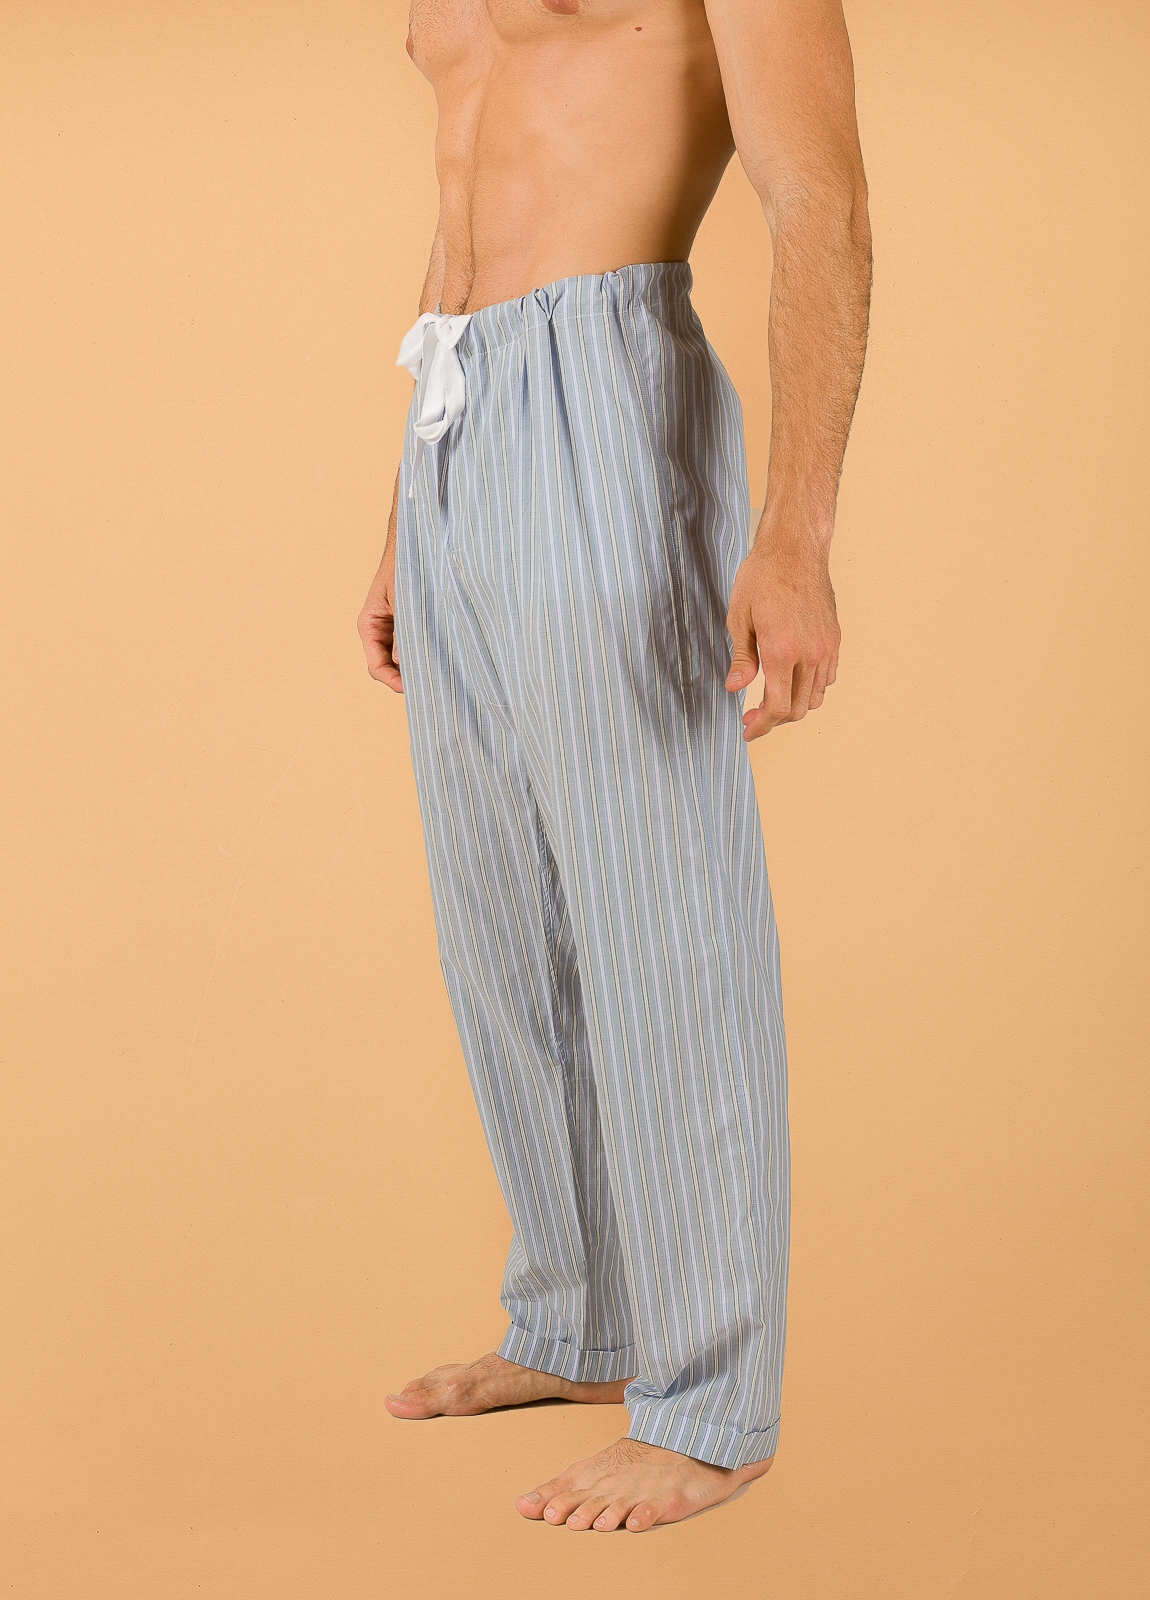 Pantalón largo de Pijama FUREST COLECCIÓN rayas azul y verde con funda incluida - Ítem3